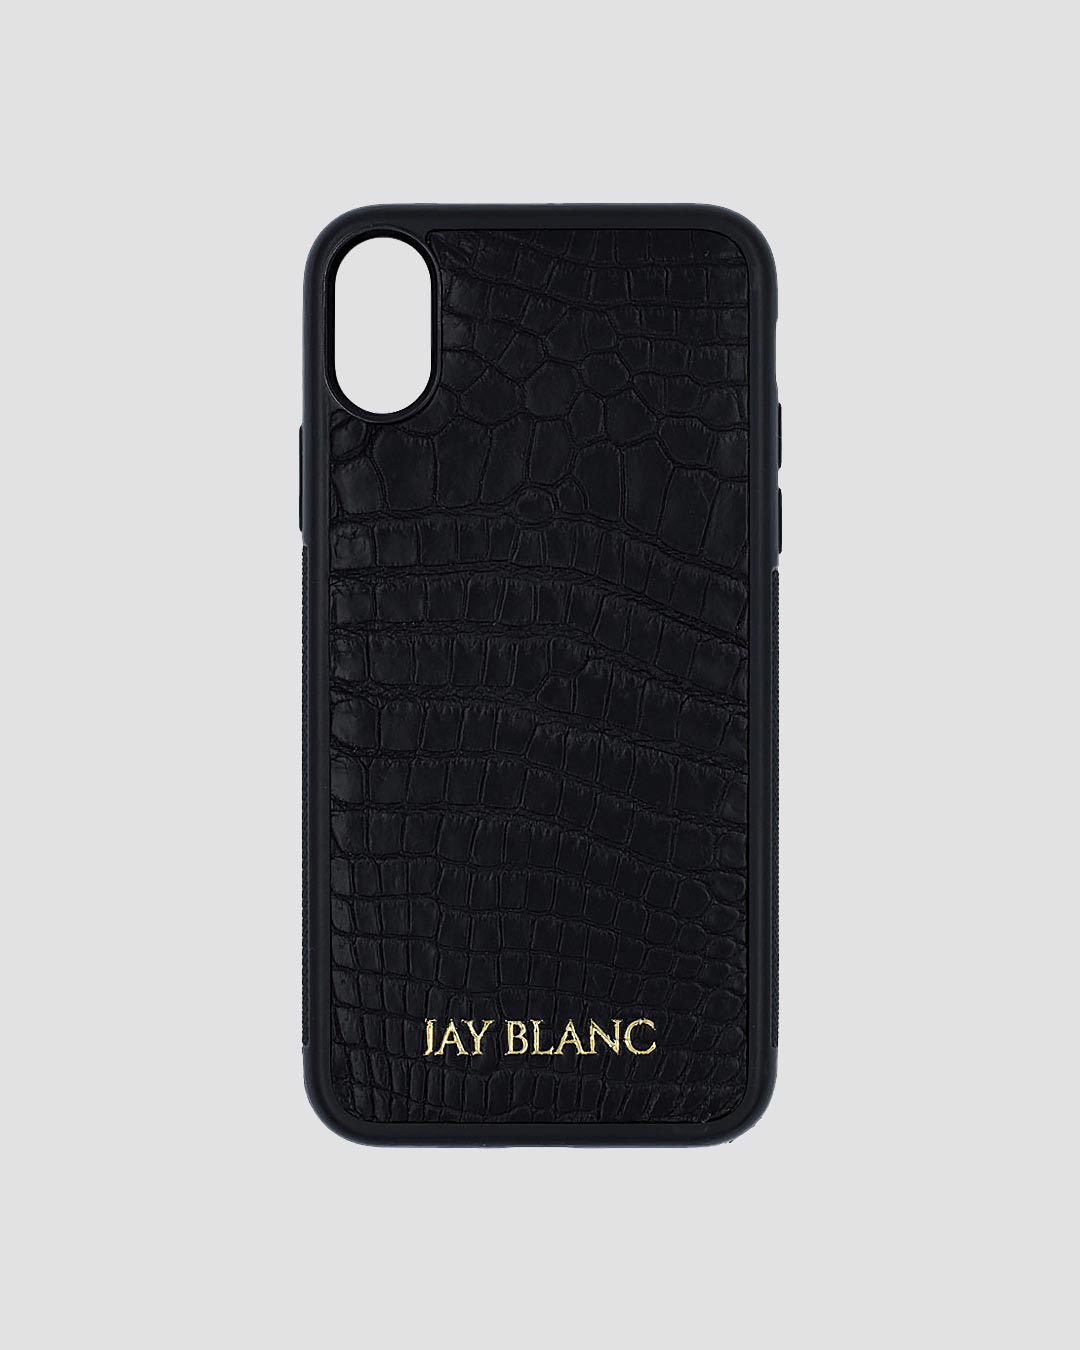 CROC CASE IPHONE - Jay Blanc